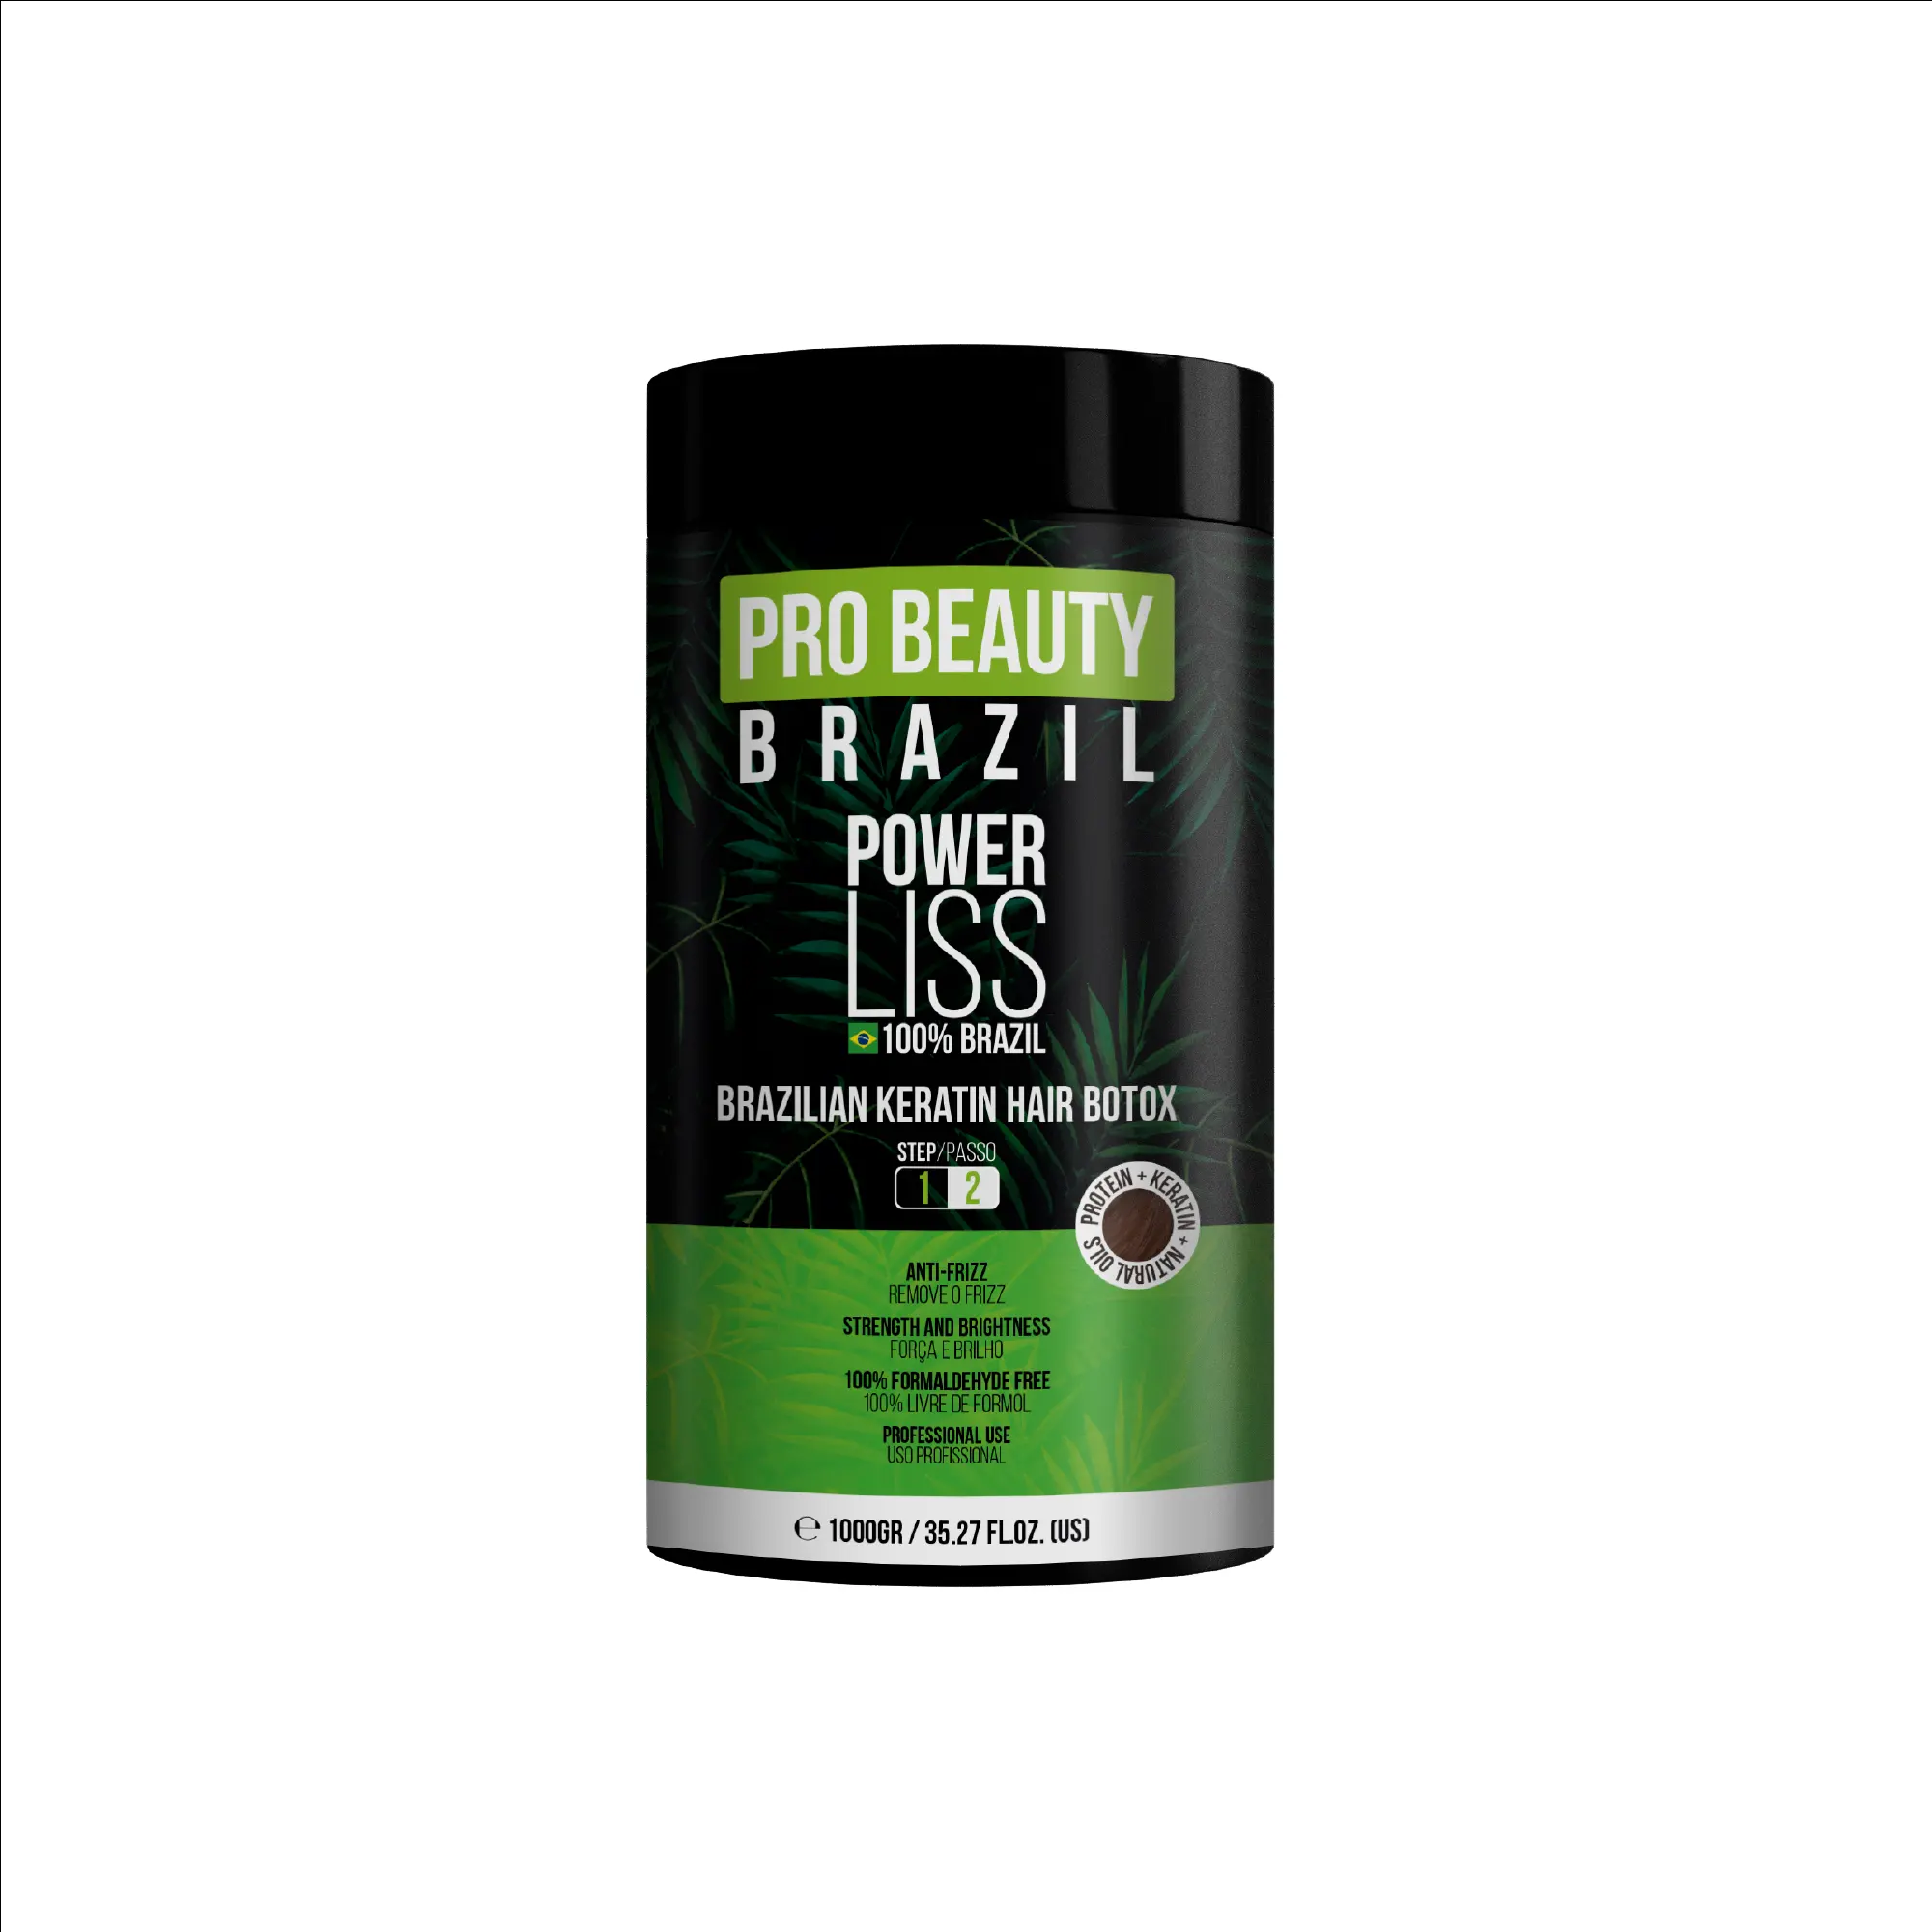 Arganöl und brasilia nisches Keratin für ein Premium-Haar glättung erlebnis